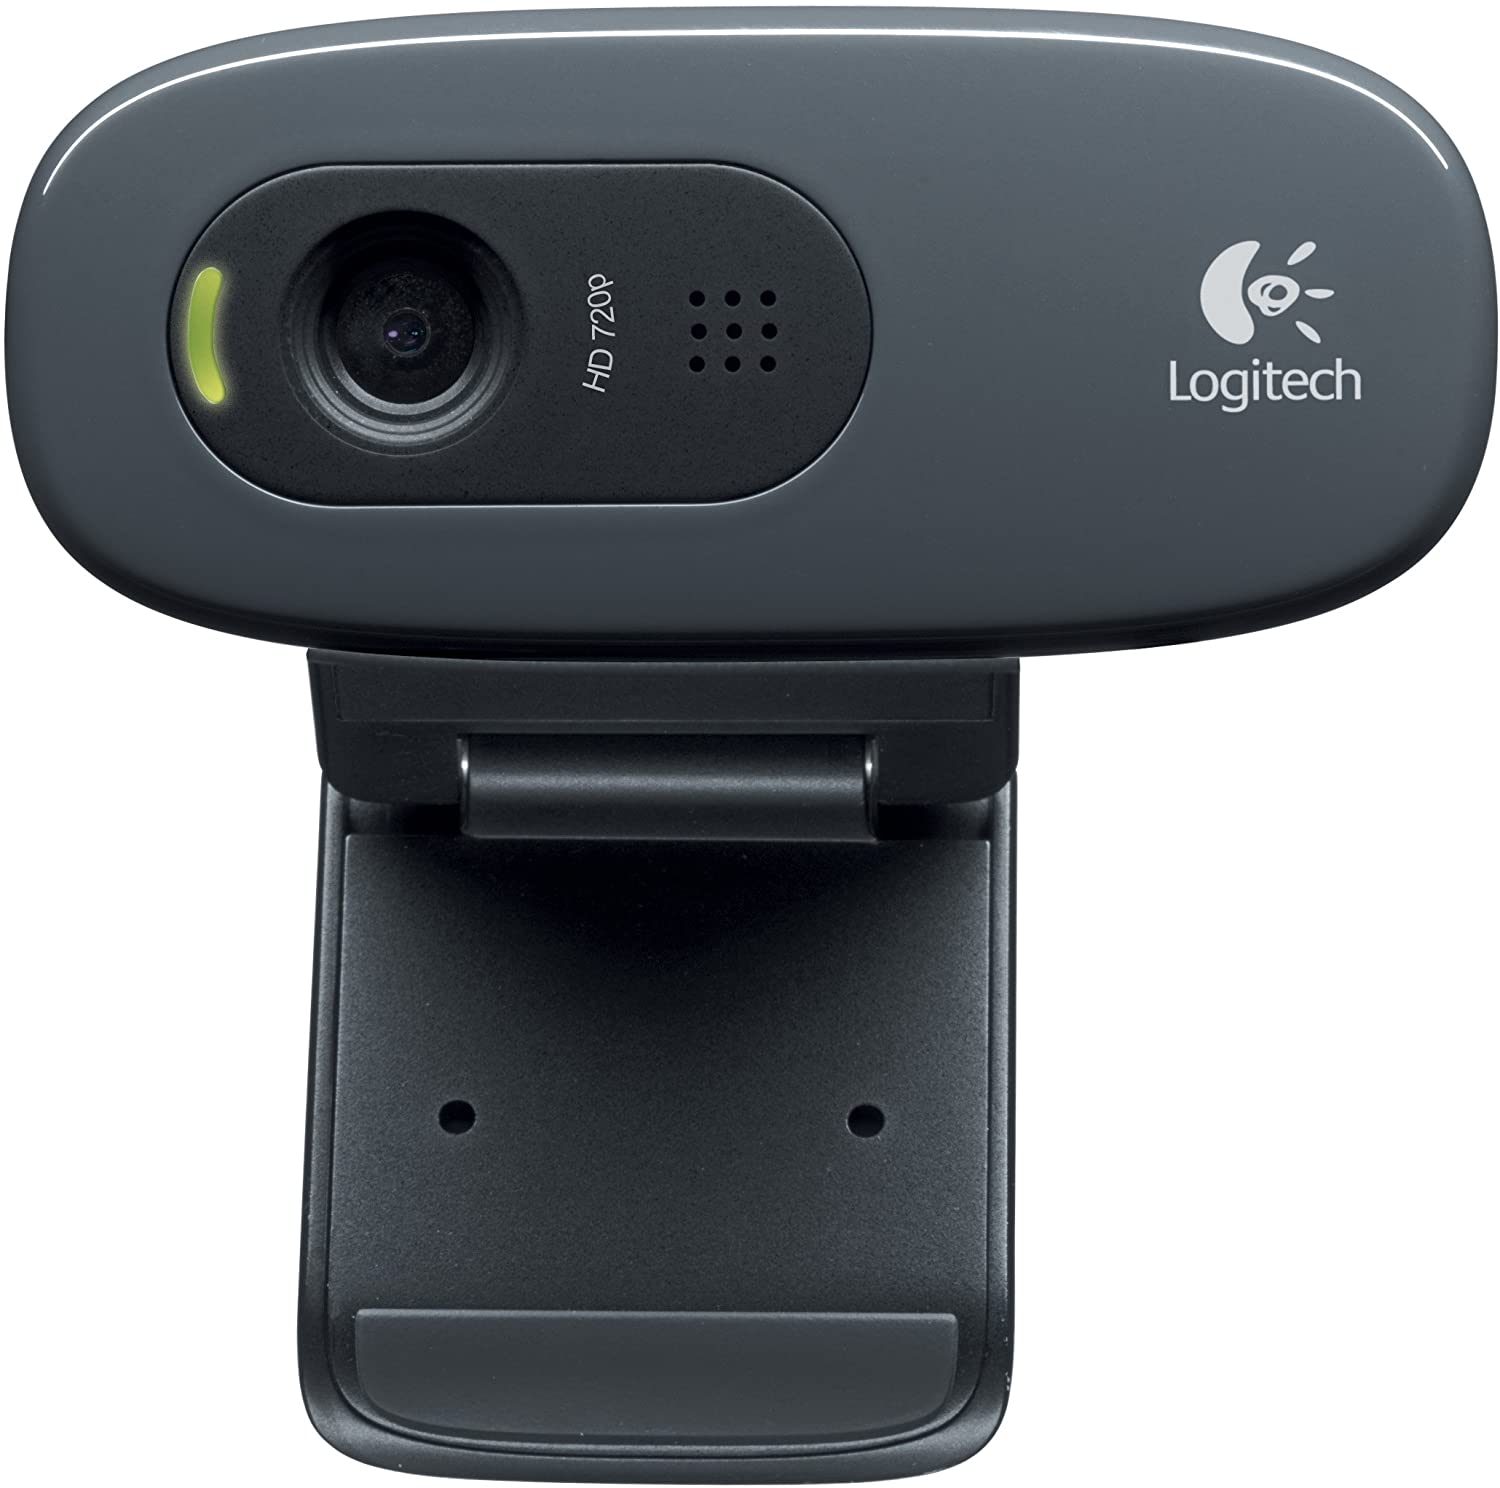 Webcam Logitech